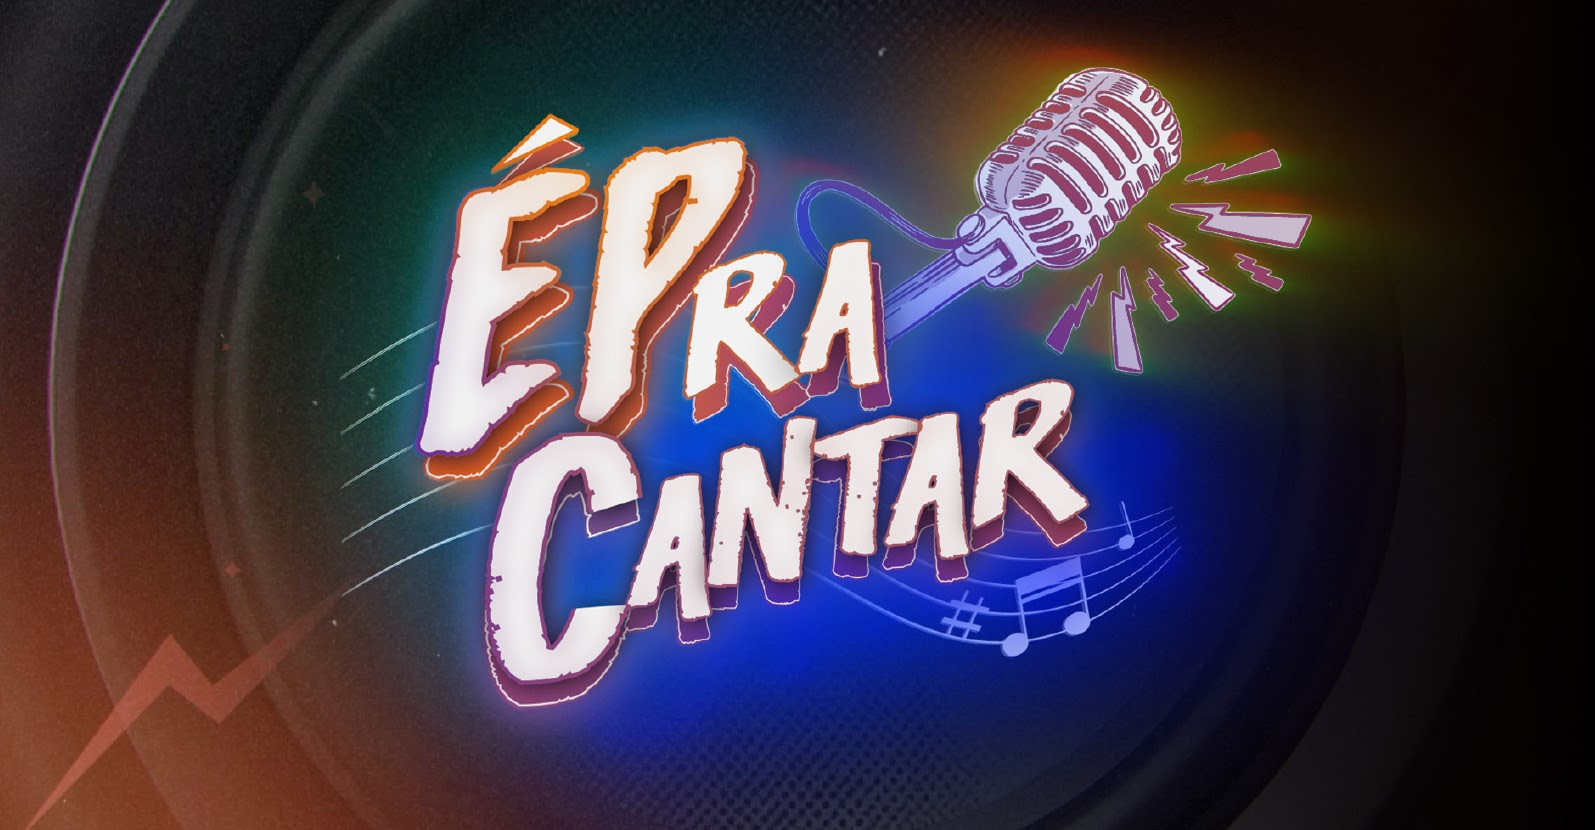 ÉPra Cantar: concurso musical de Pop Rock da EPTV está nos últimos dias de inscrições